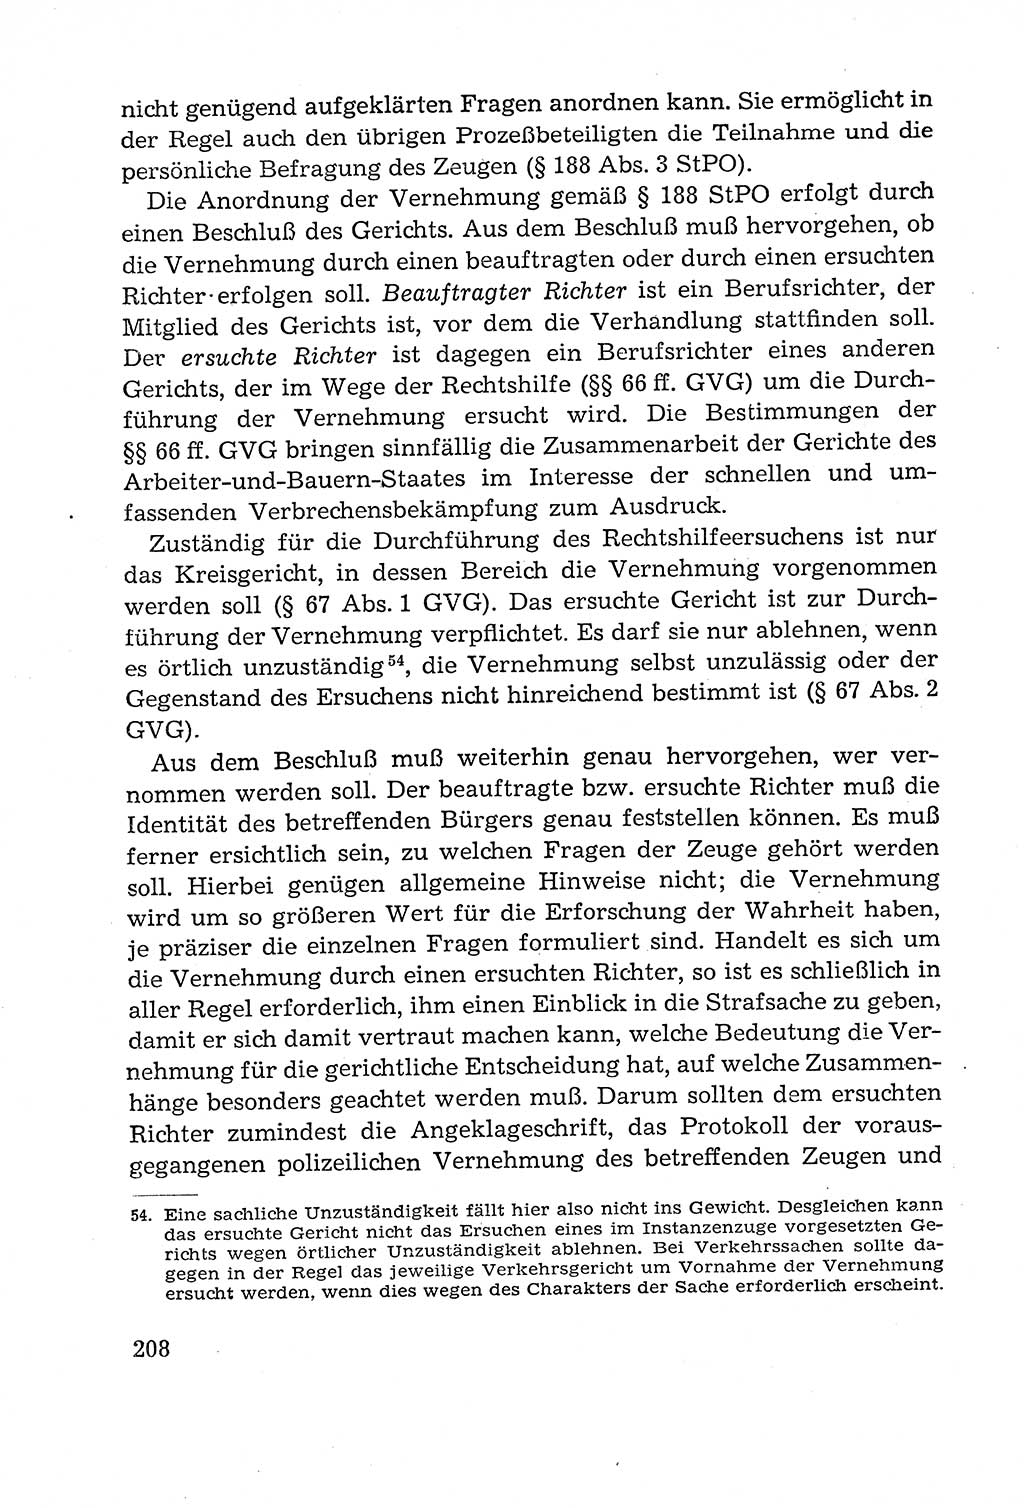 Leitfaden des Strafprozeßrechts der Deutschen Demokratischen Republik (DDR) 1959, Seite 208 (LF StPR DDR 1959, S. 208)